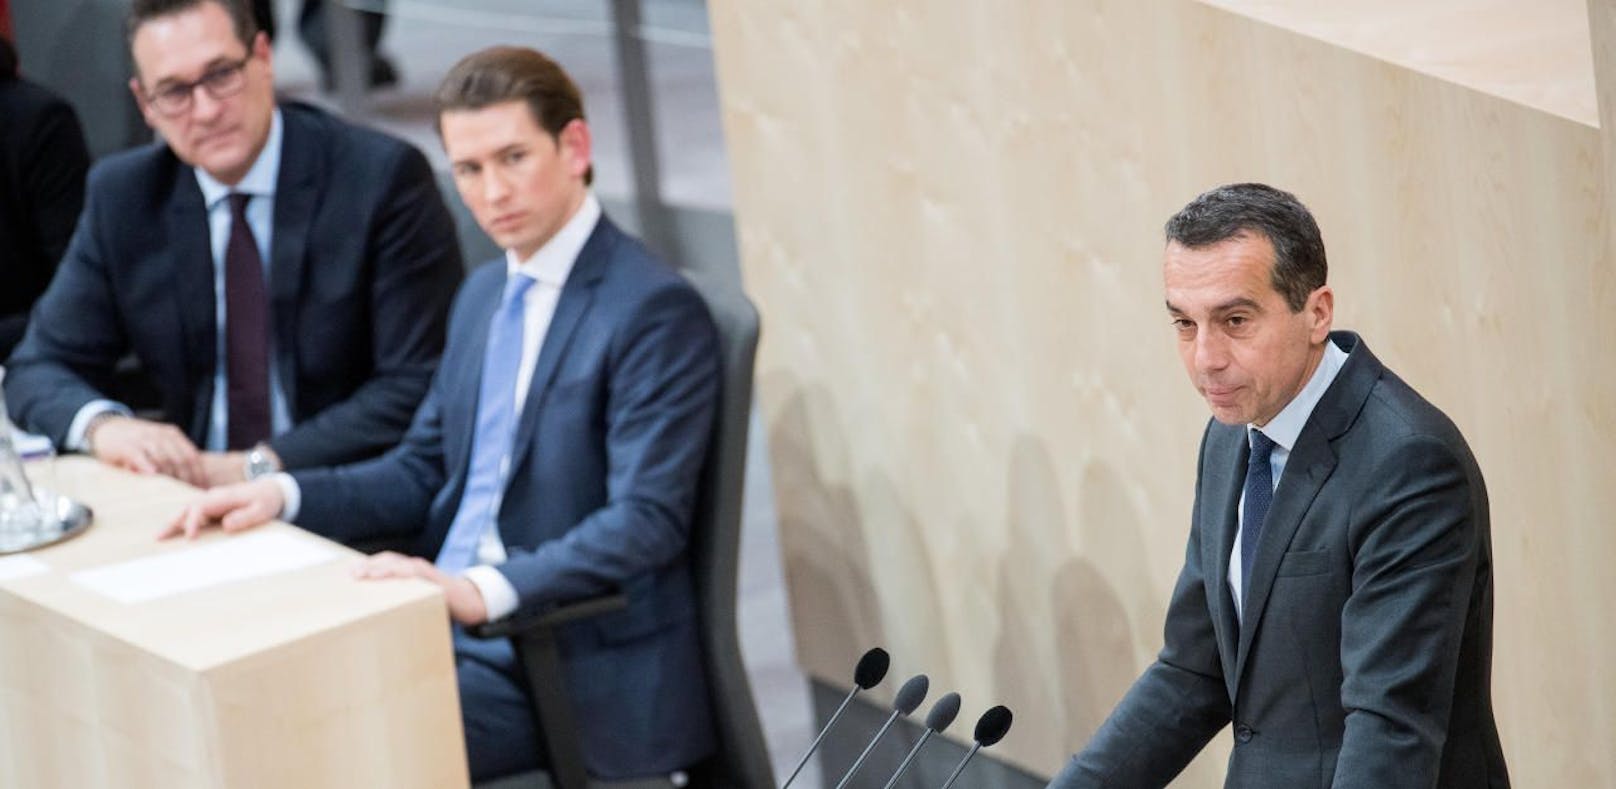 SPÖ-Klubobmann Christian Kern vor Bundeskanzler Sebastian Kurz (ÖVP) und Vizekanzler Heinz-Christian Strache (FPÖ).